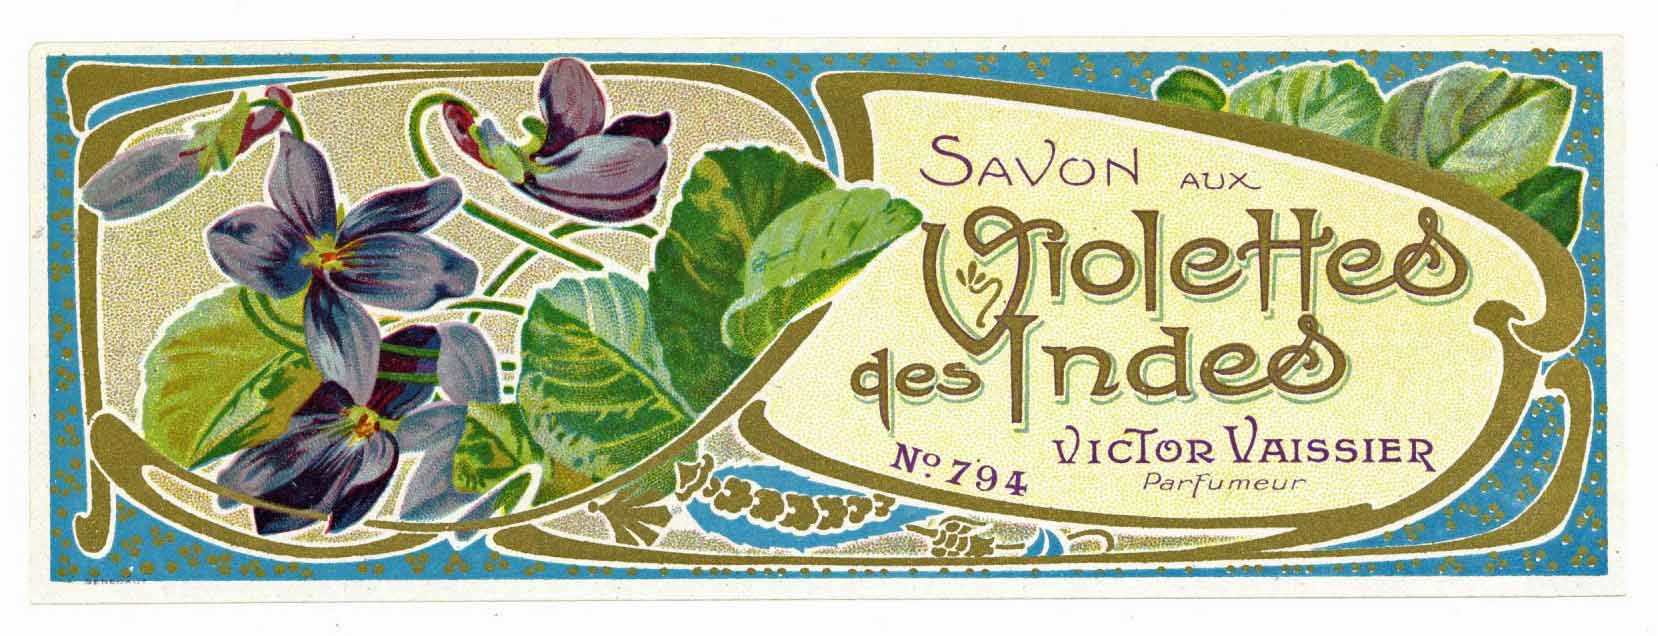 Savon Aux Violettes des Indes Brand Vintage French Soap Label